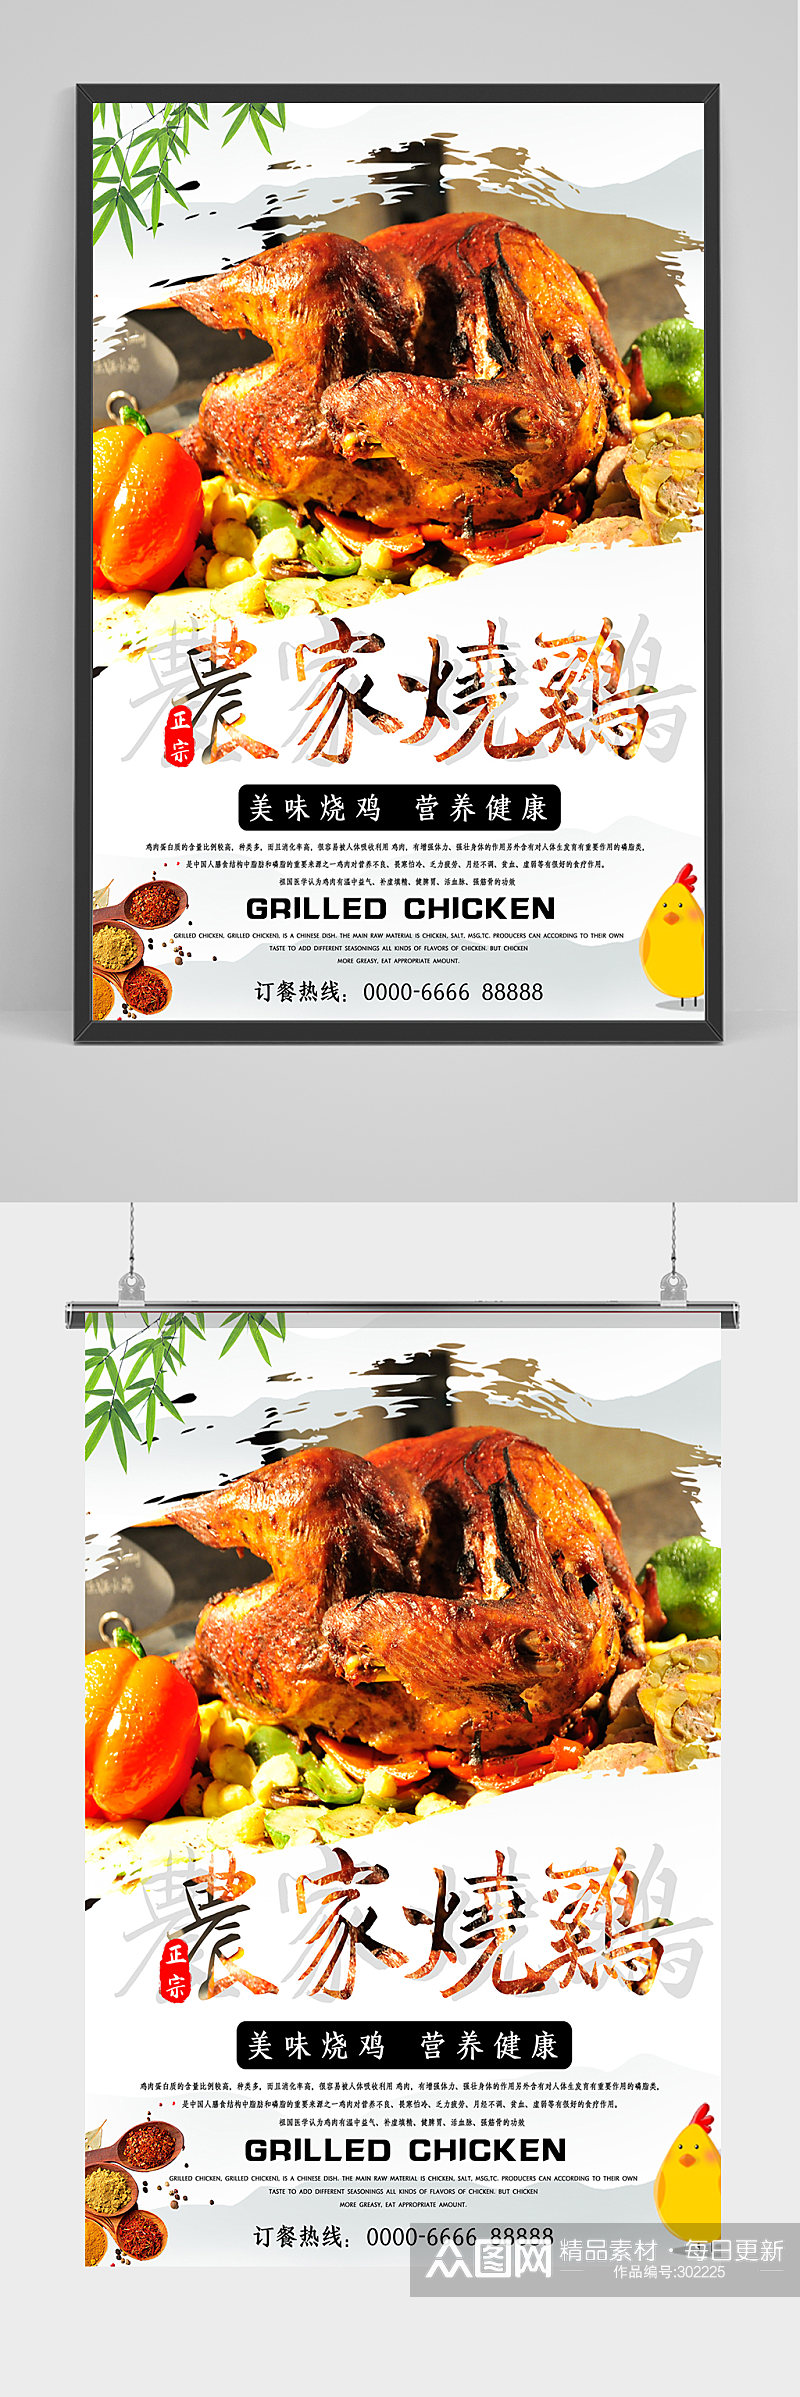 营养健康农家烧鸡海报设计素材